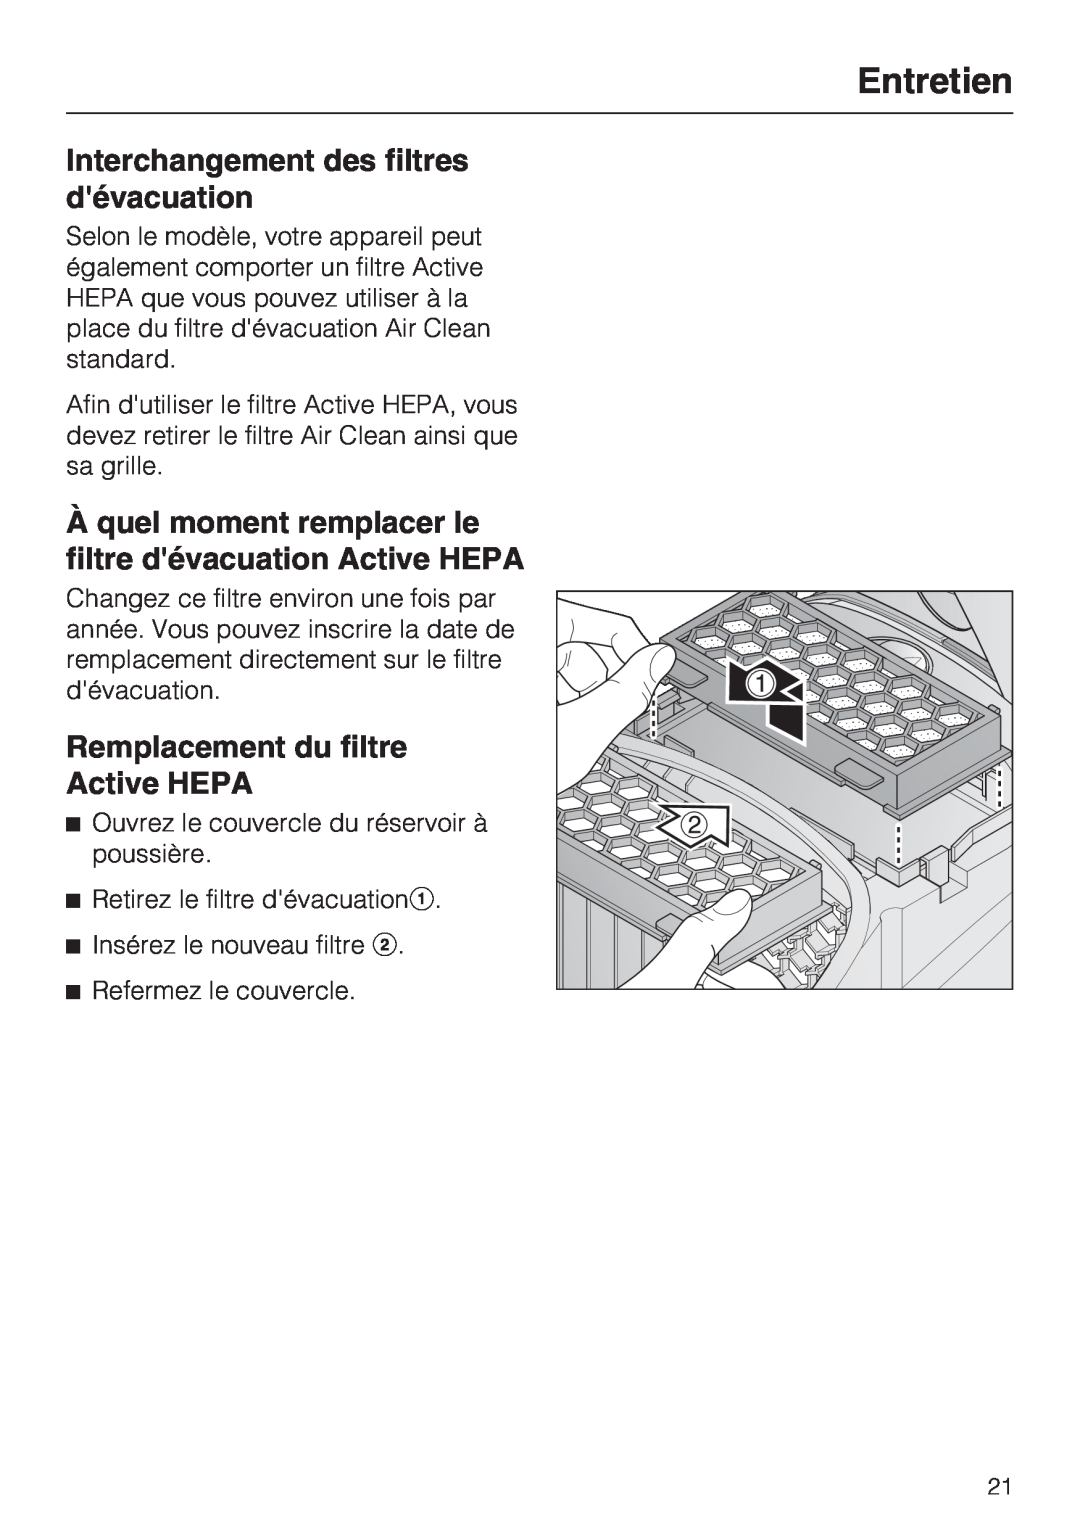 Miele S 2000 operating instructions Interchangement des filtres dévacuation, Remplacement du filtre Active HEPA, Entretien 